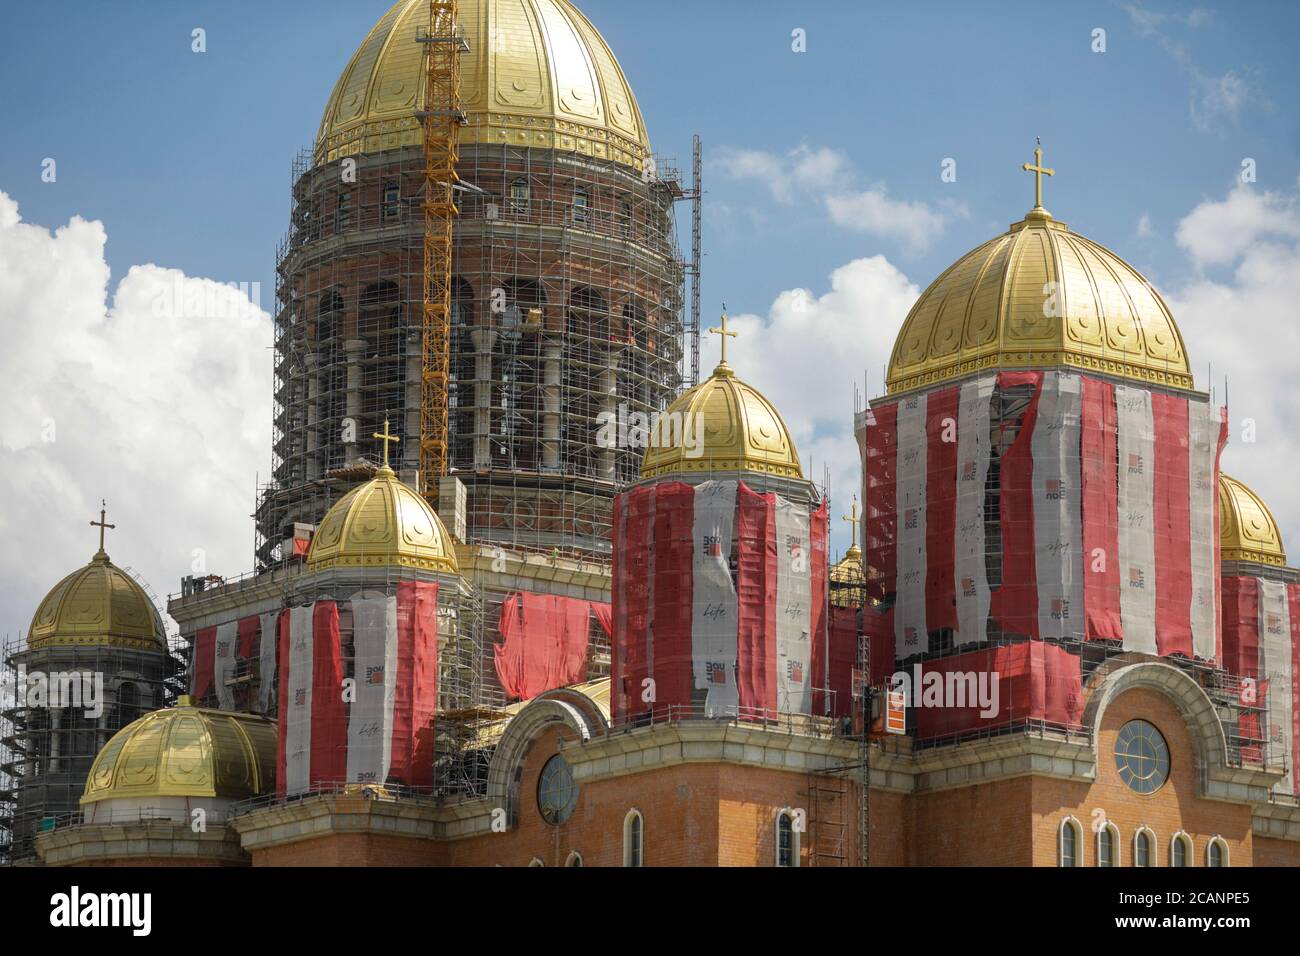 Bucarest, Roumanie - 7 août 2020 : chantier de construction de 'Catedrala Mantuirii Neamului' (cathédrale du salut du peuple), près du Palais du Parlement Banque D'Images